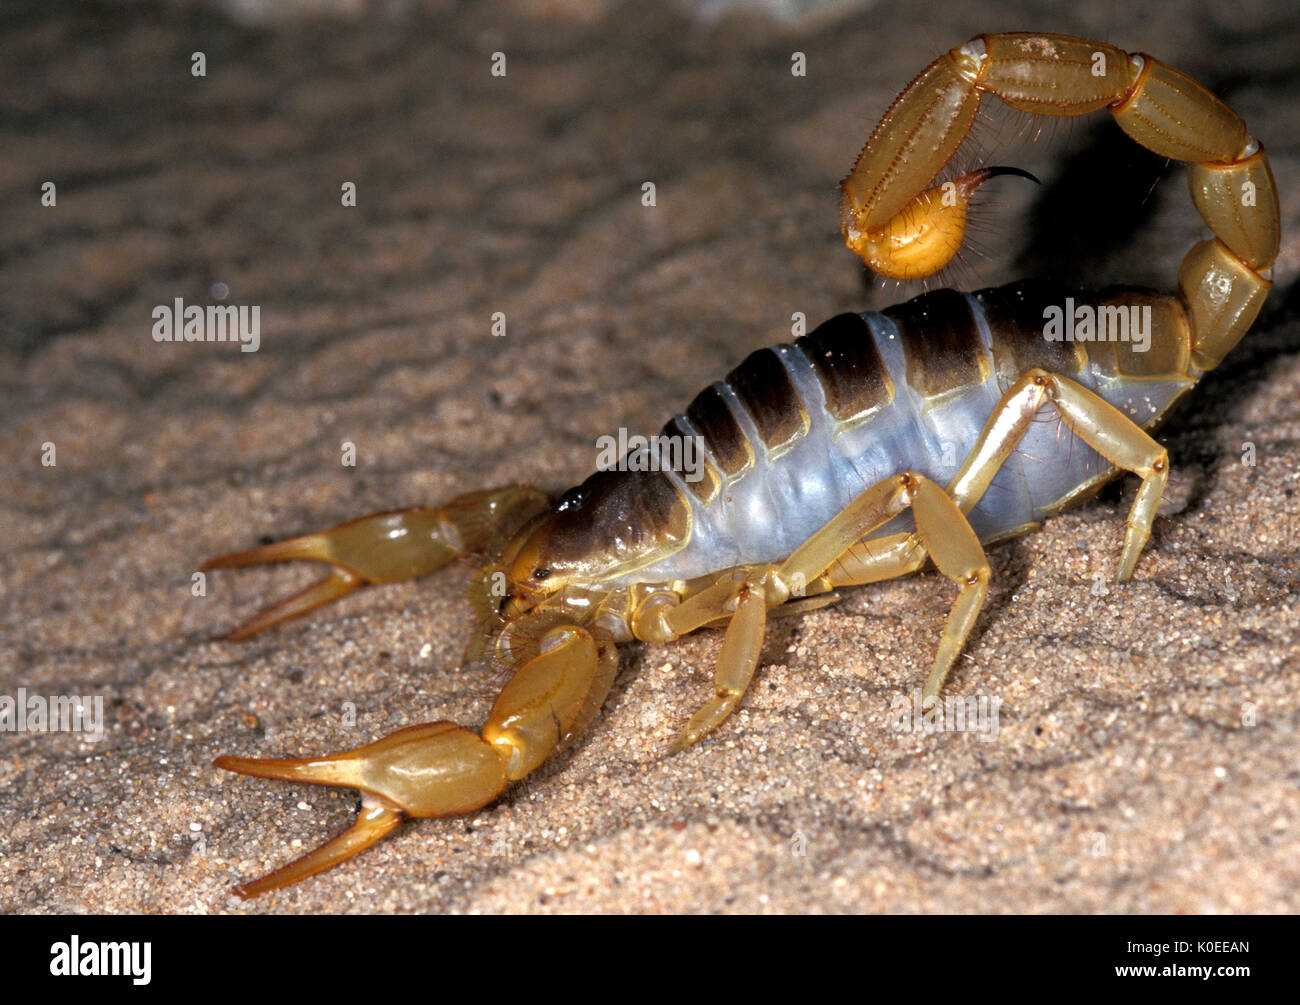 Scorpion, Hadrurus arizonensis, Arizona, sting in tail. Stock Photo